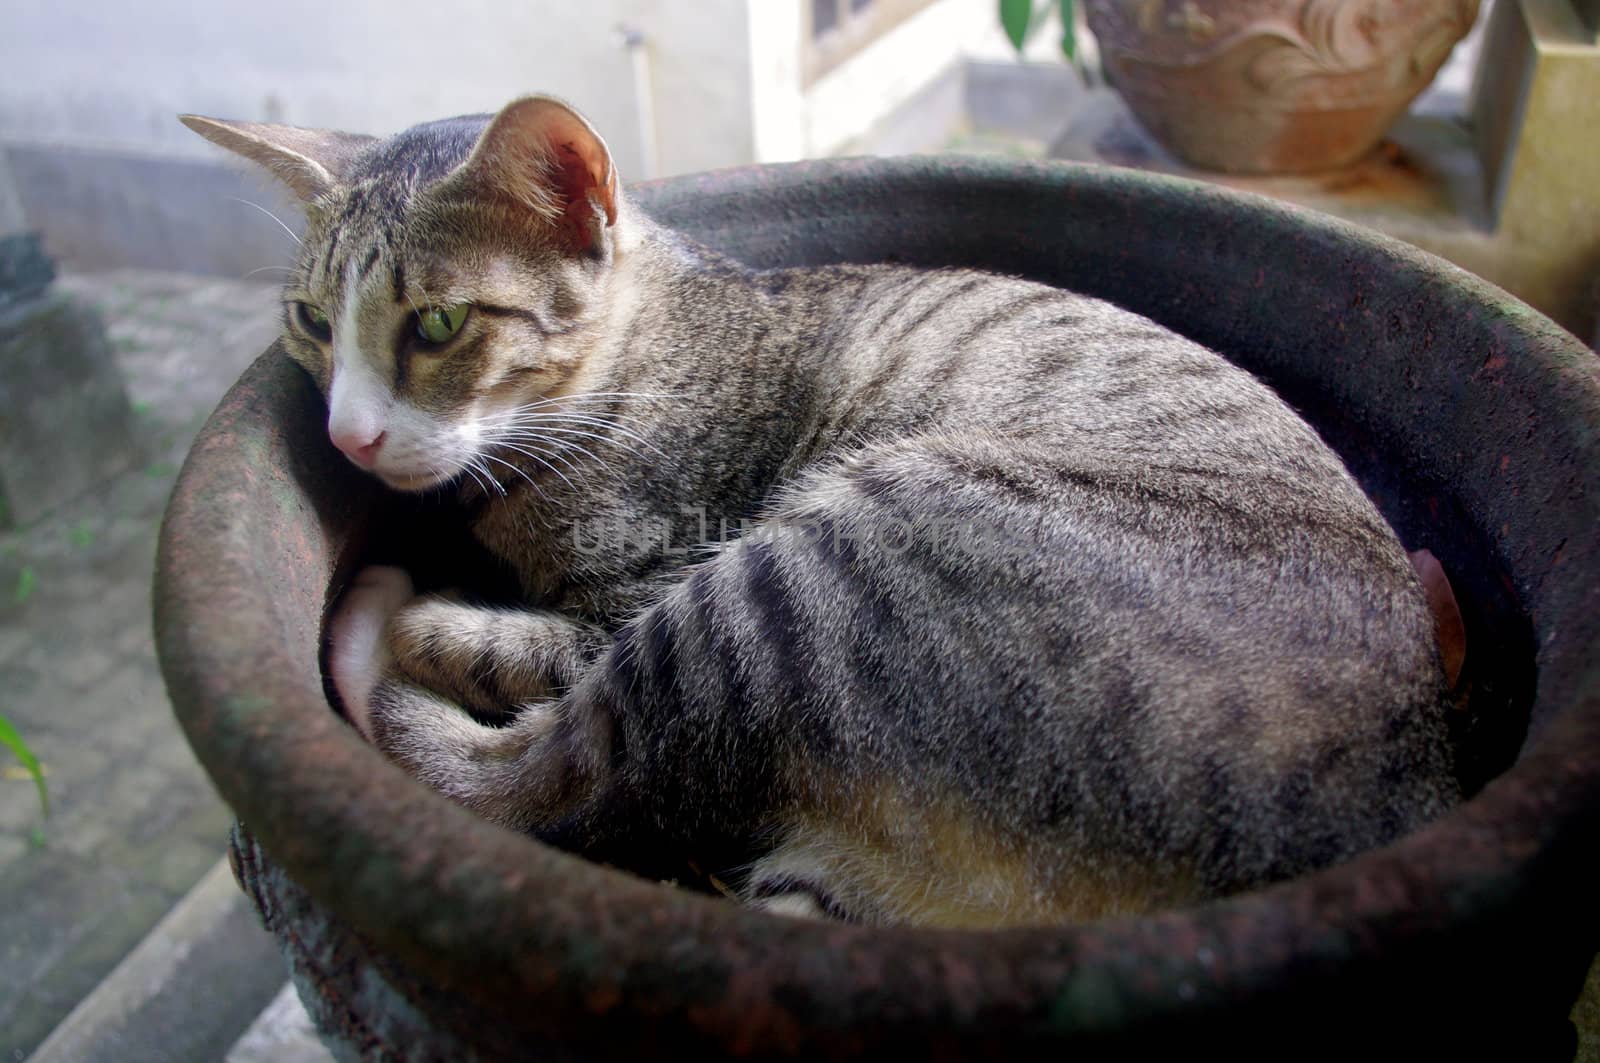 Cat lying in flower pot by Komar